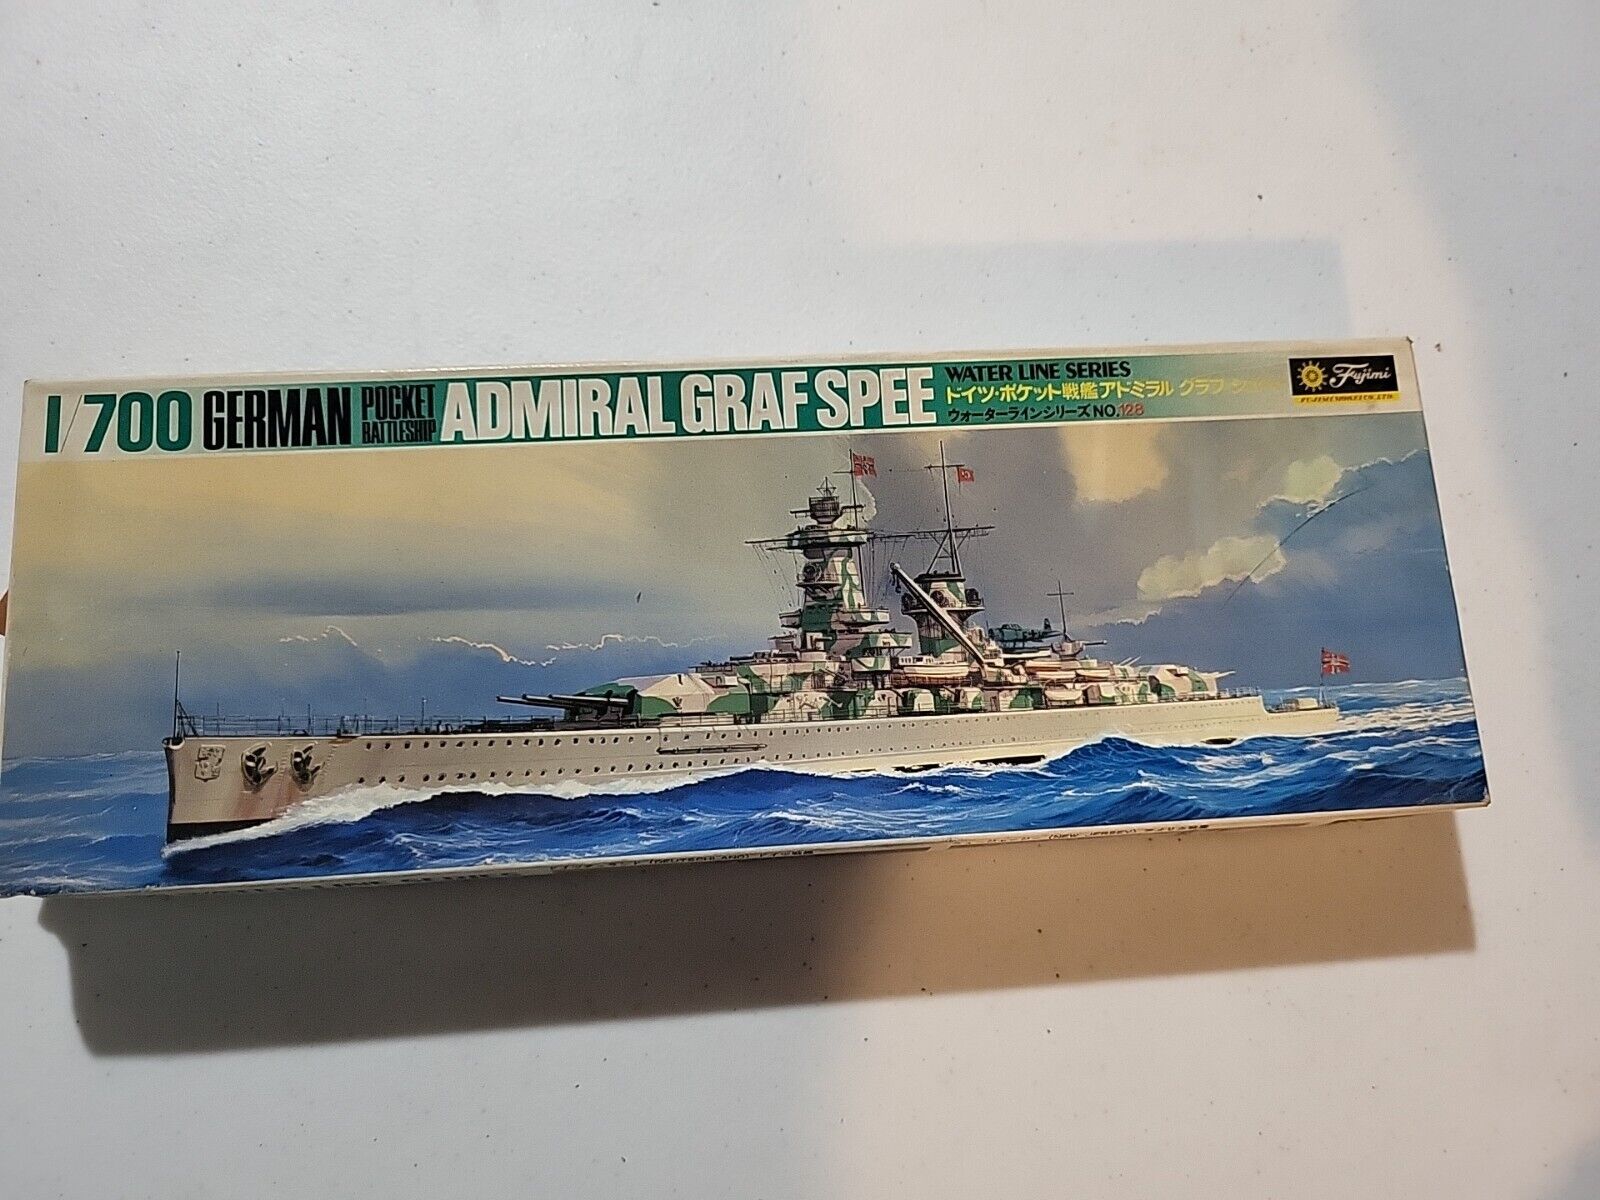 FUJIMI WLB128600 German Pocket Battleship Admiral Grafspee